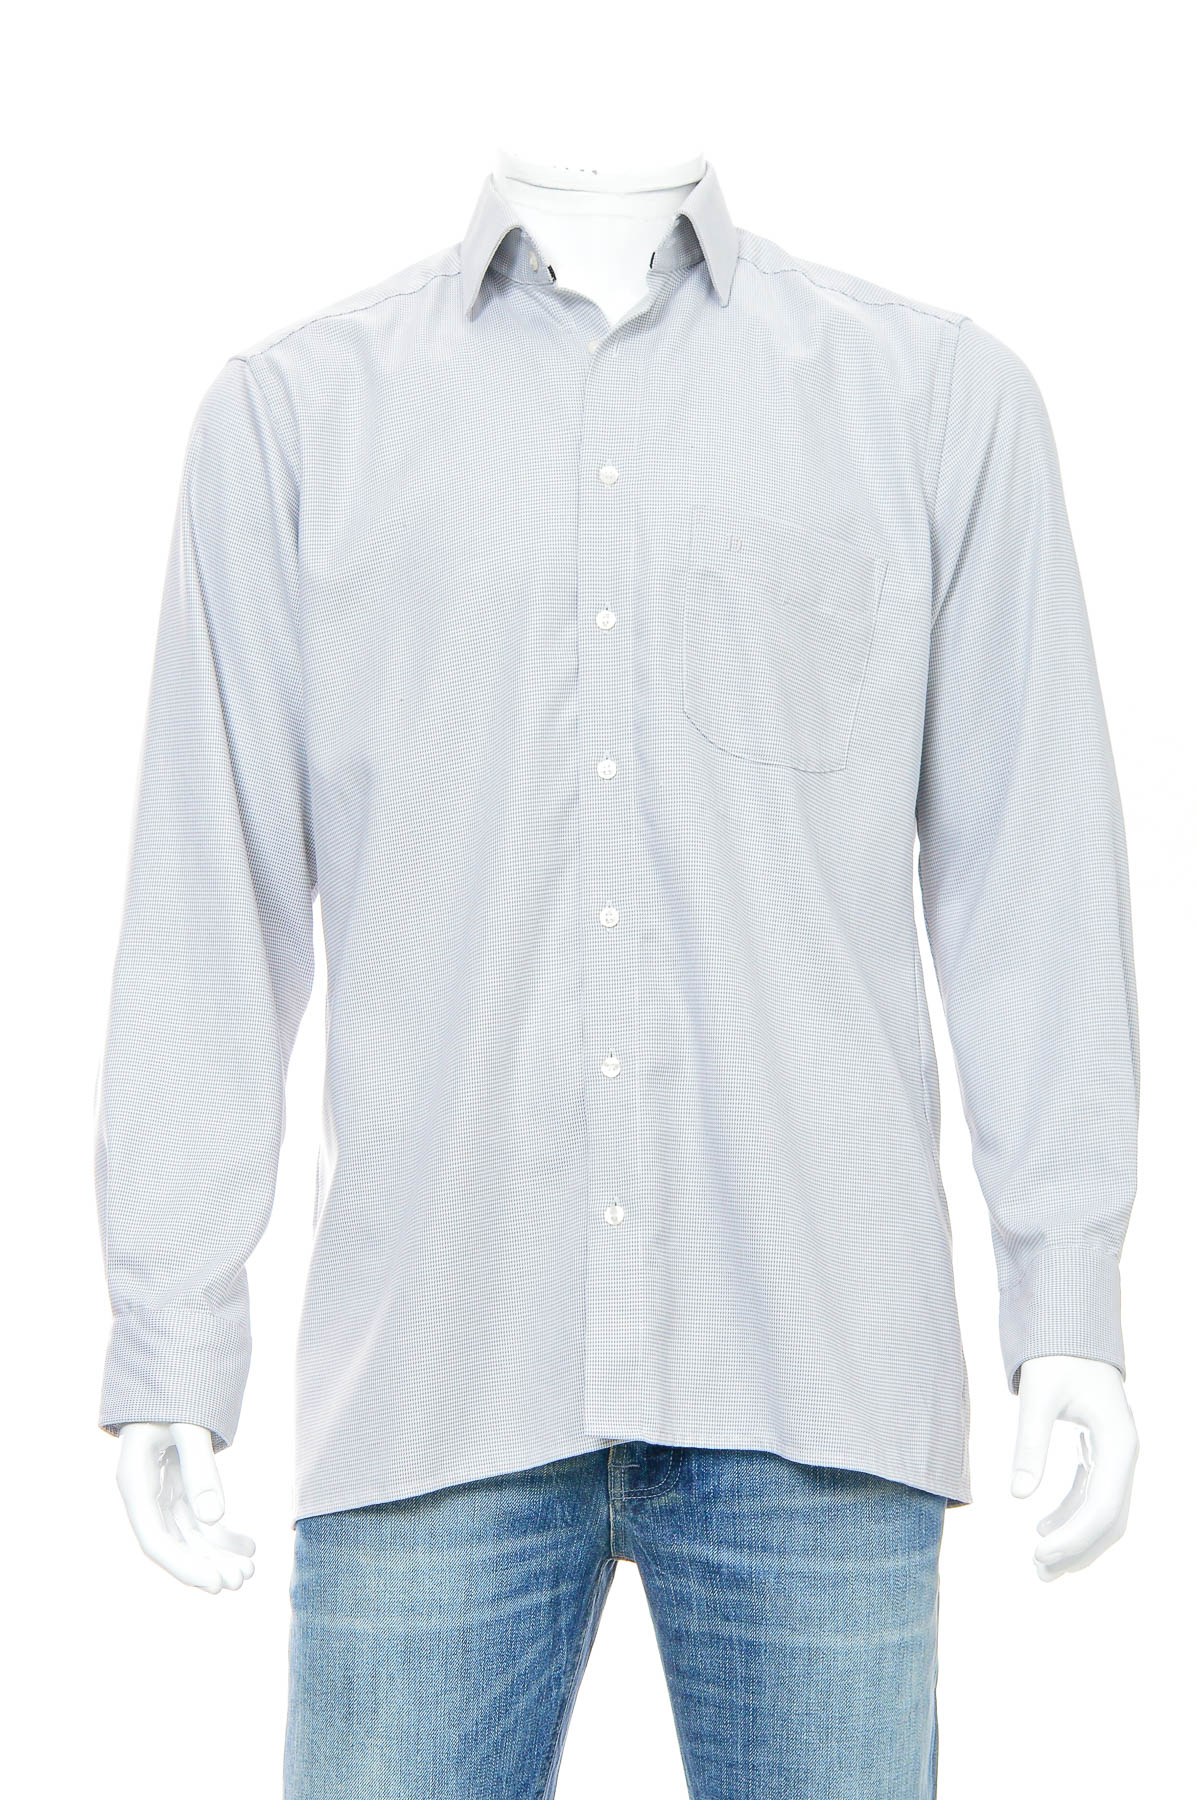 Ανδρικό πουκάμισο - Digel - 0